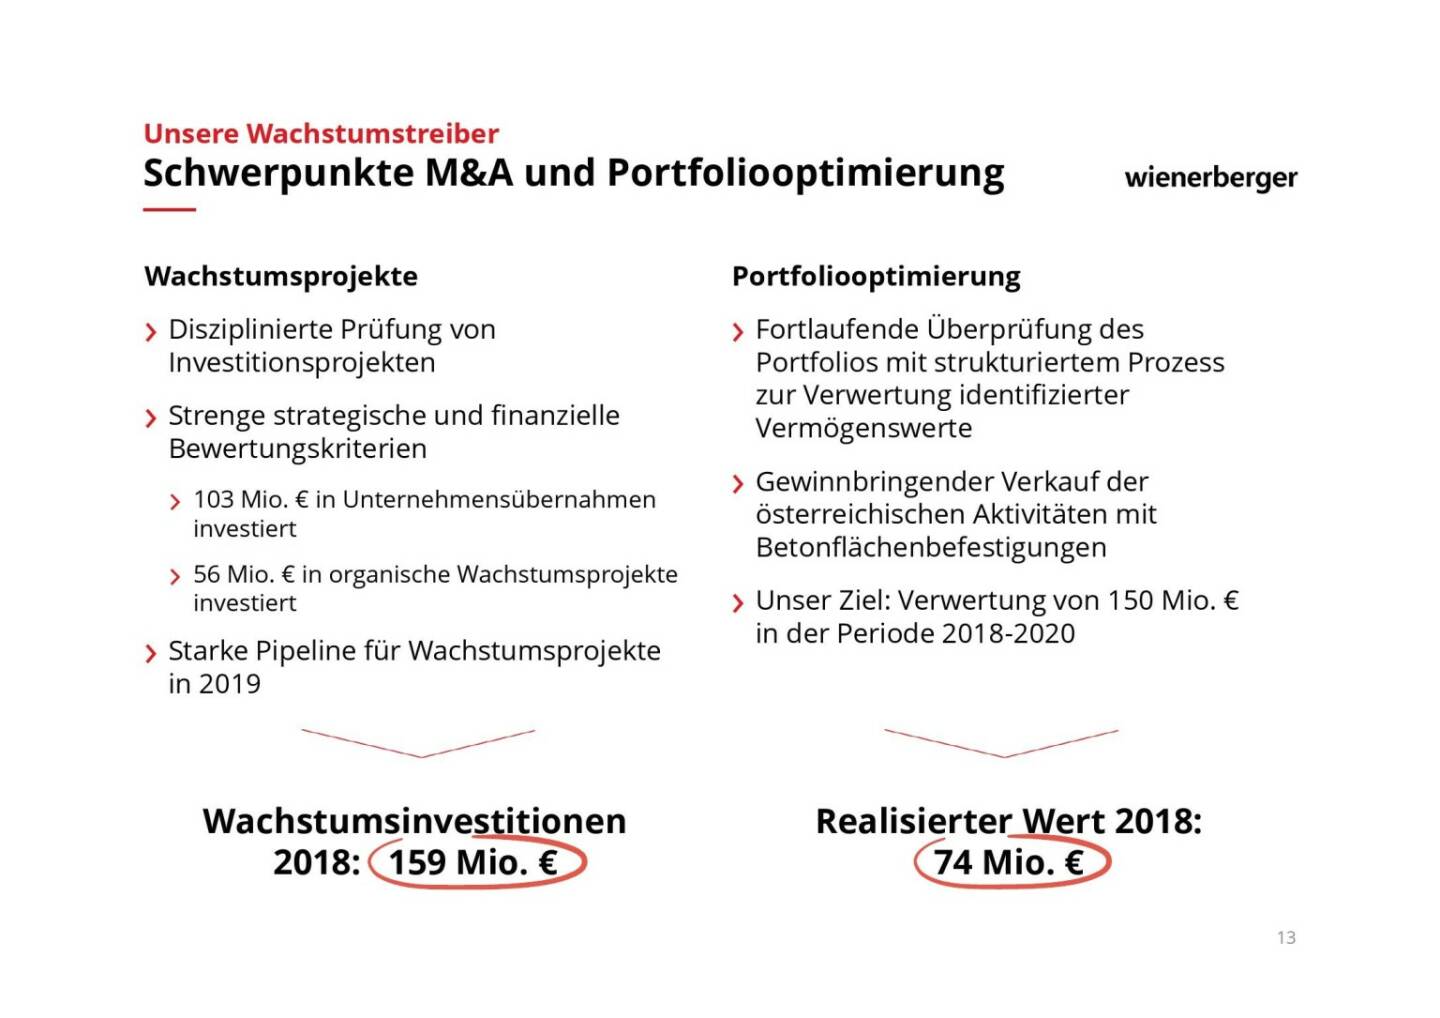 Wienerberger - Schwerpunkte M&A und Portfoliooptimierung